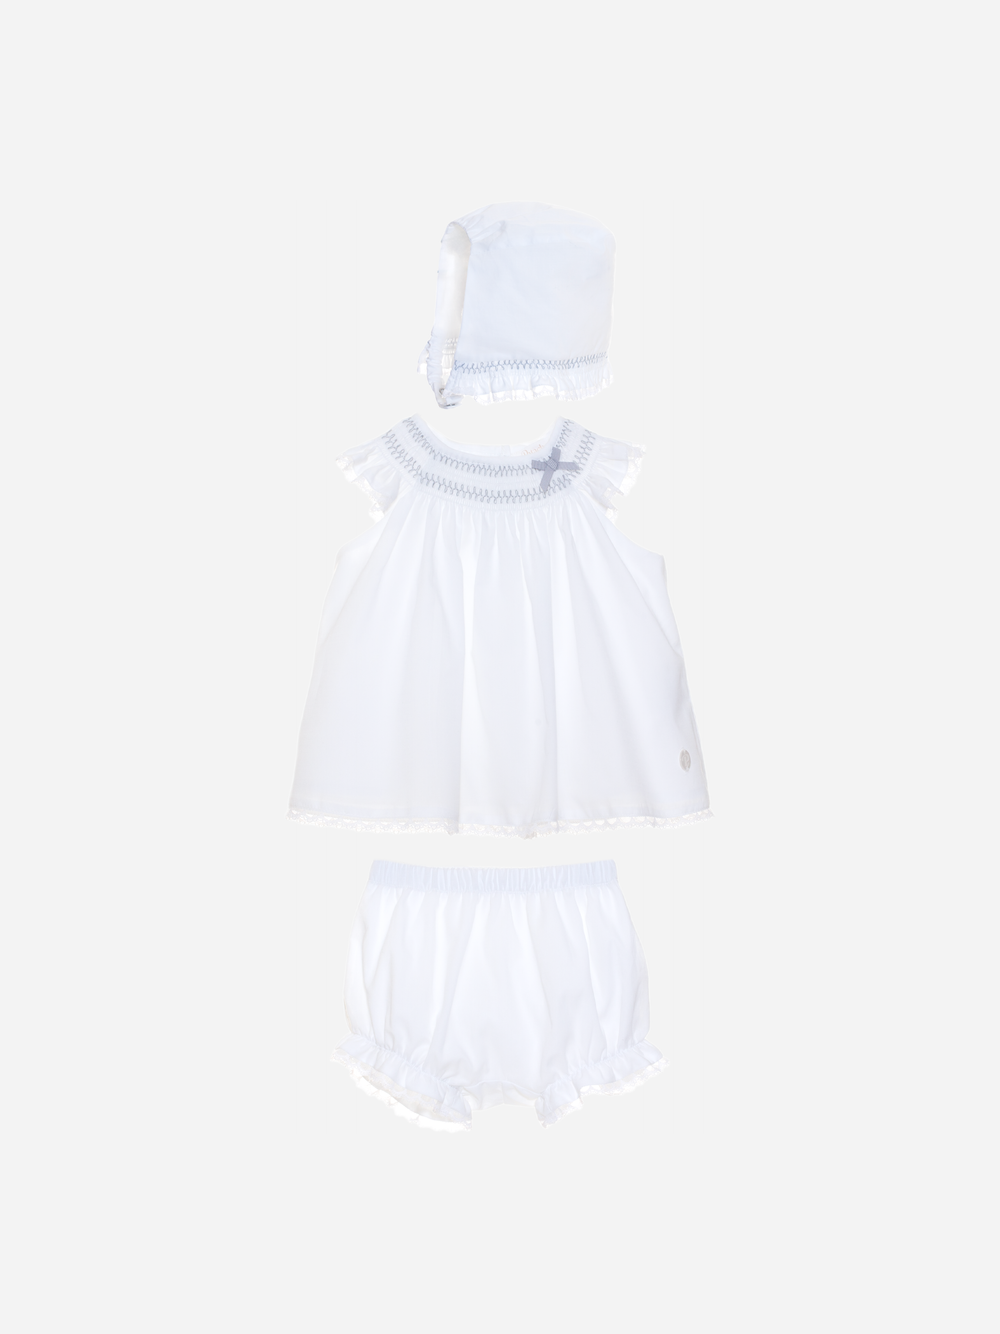 Conjunto branco constituído por gorro, blusa e calção de menina